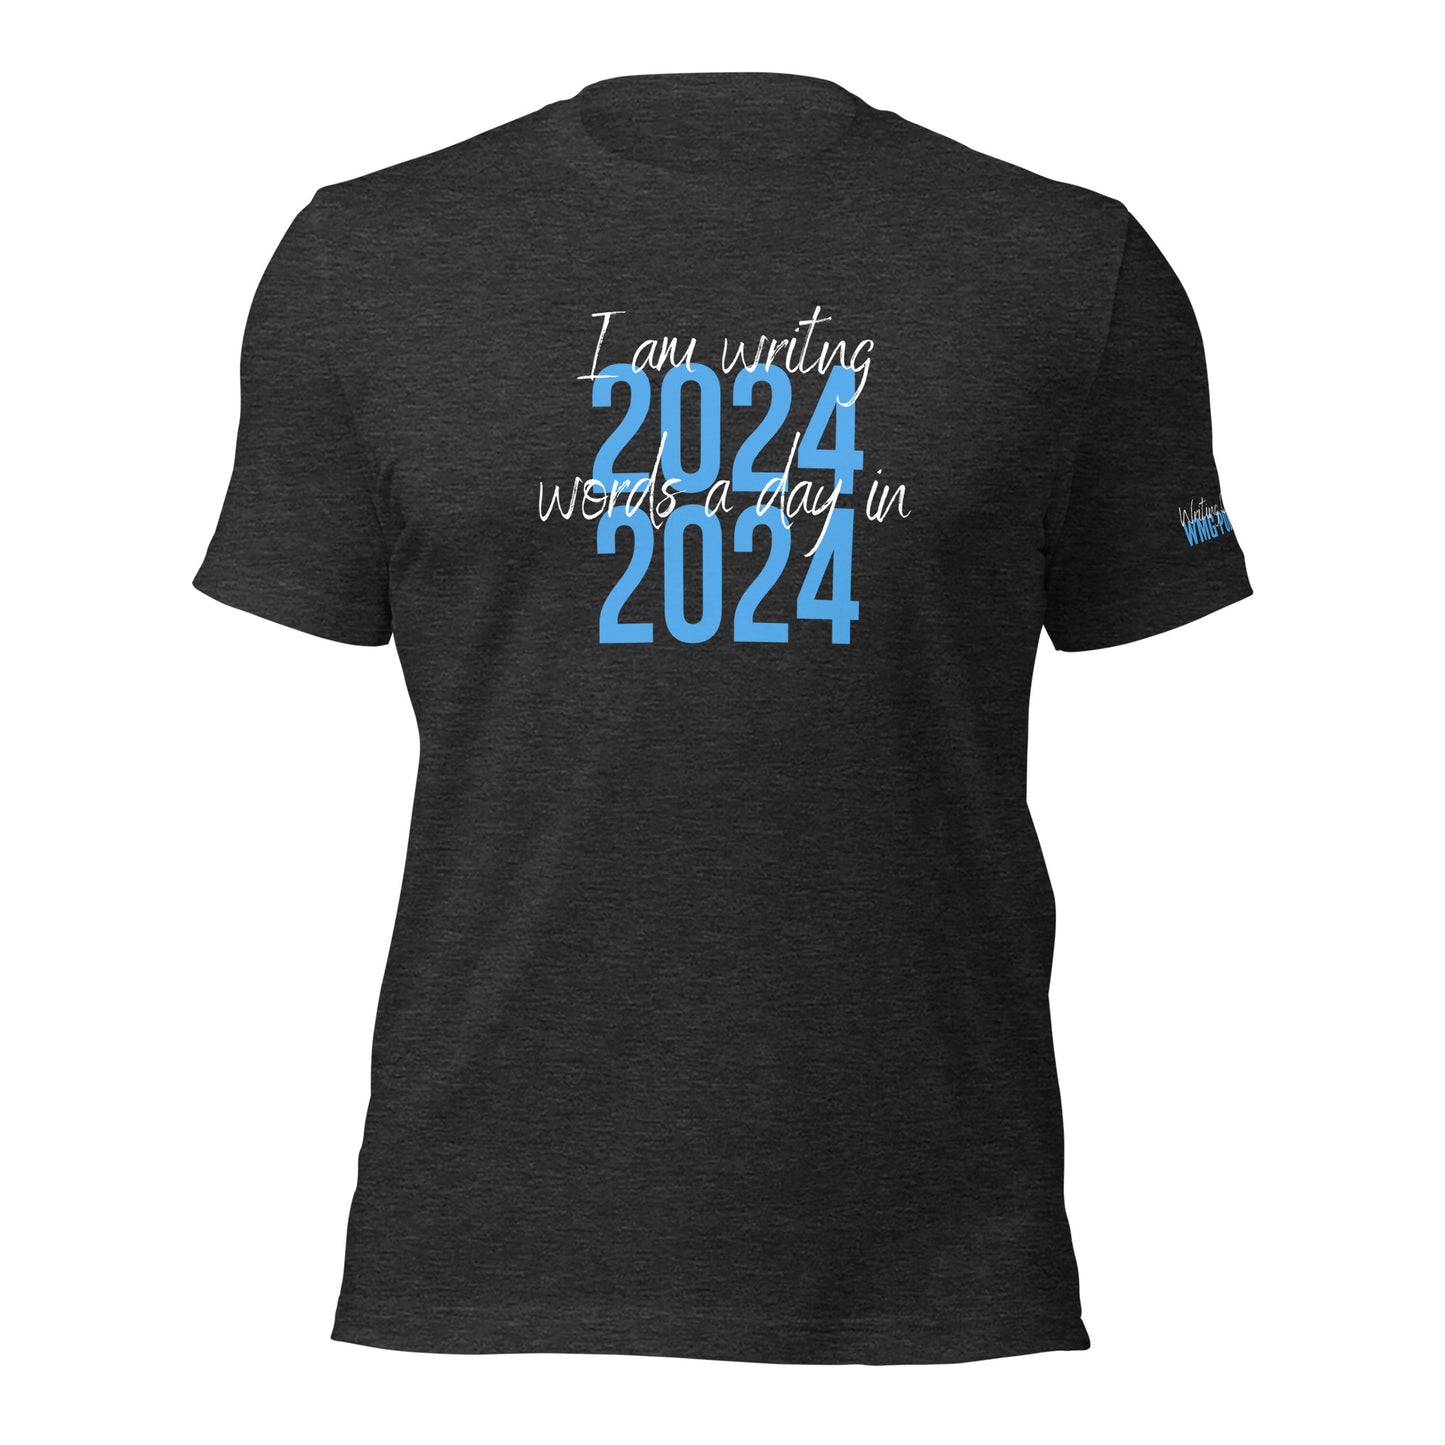 I AM WRITING 2024 WORDS Unisex T-Shirt - WRITING CHALLENGES WMG Publishing